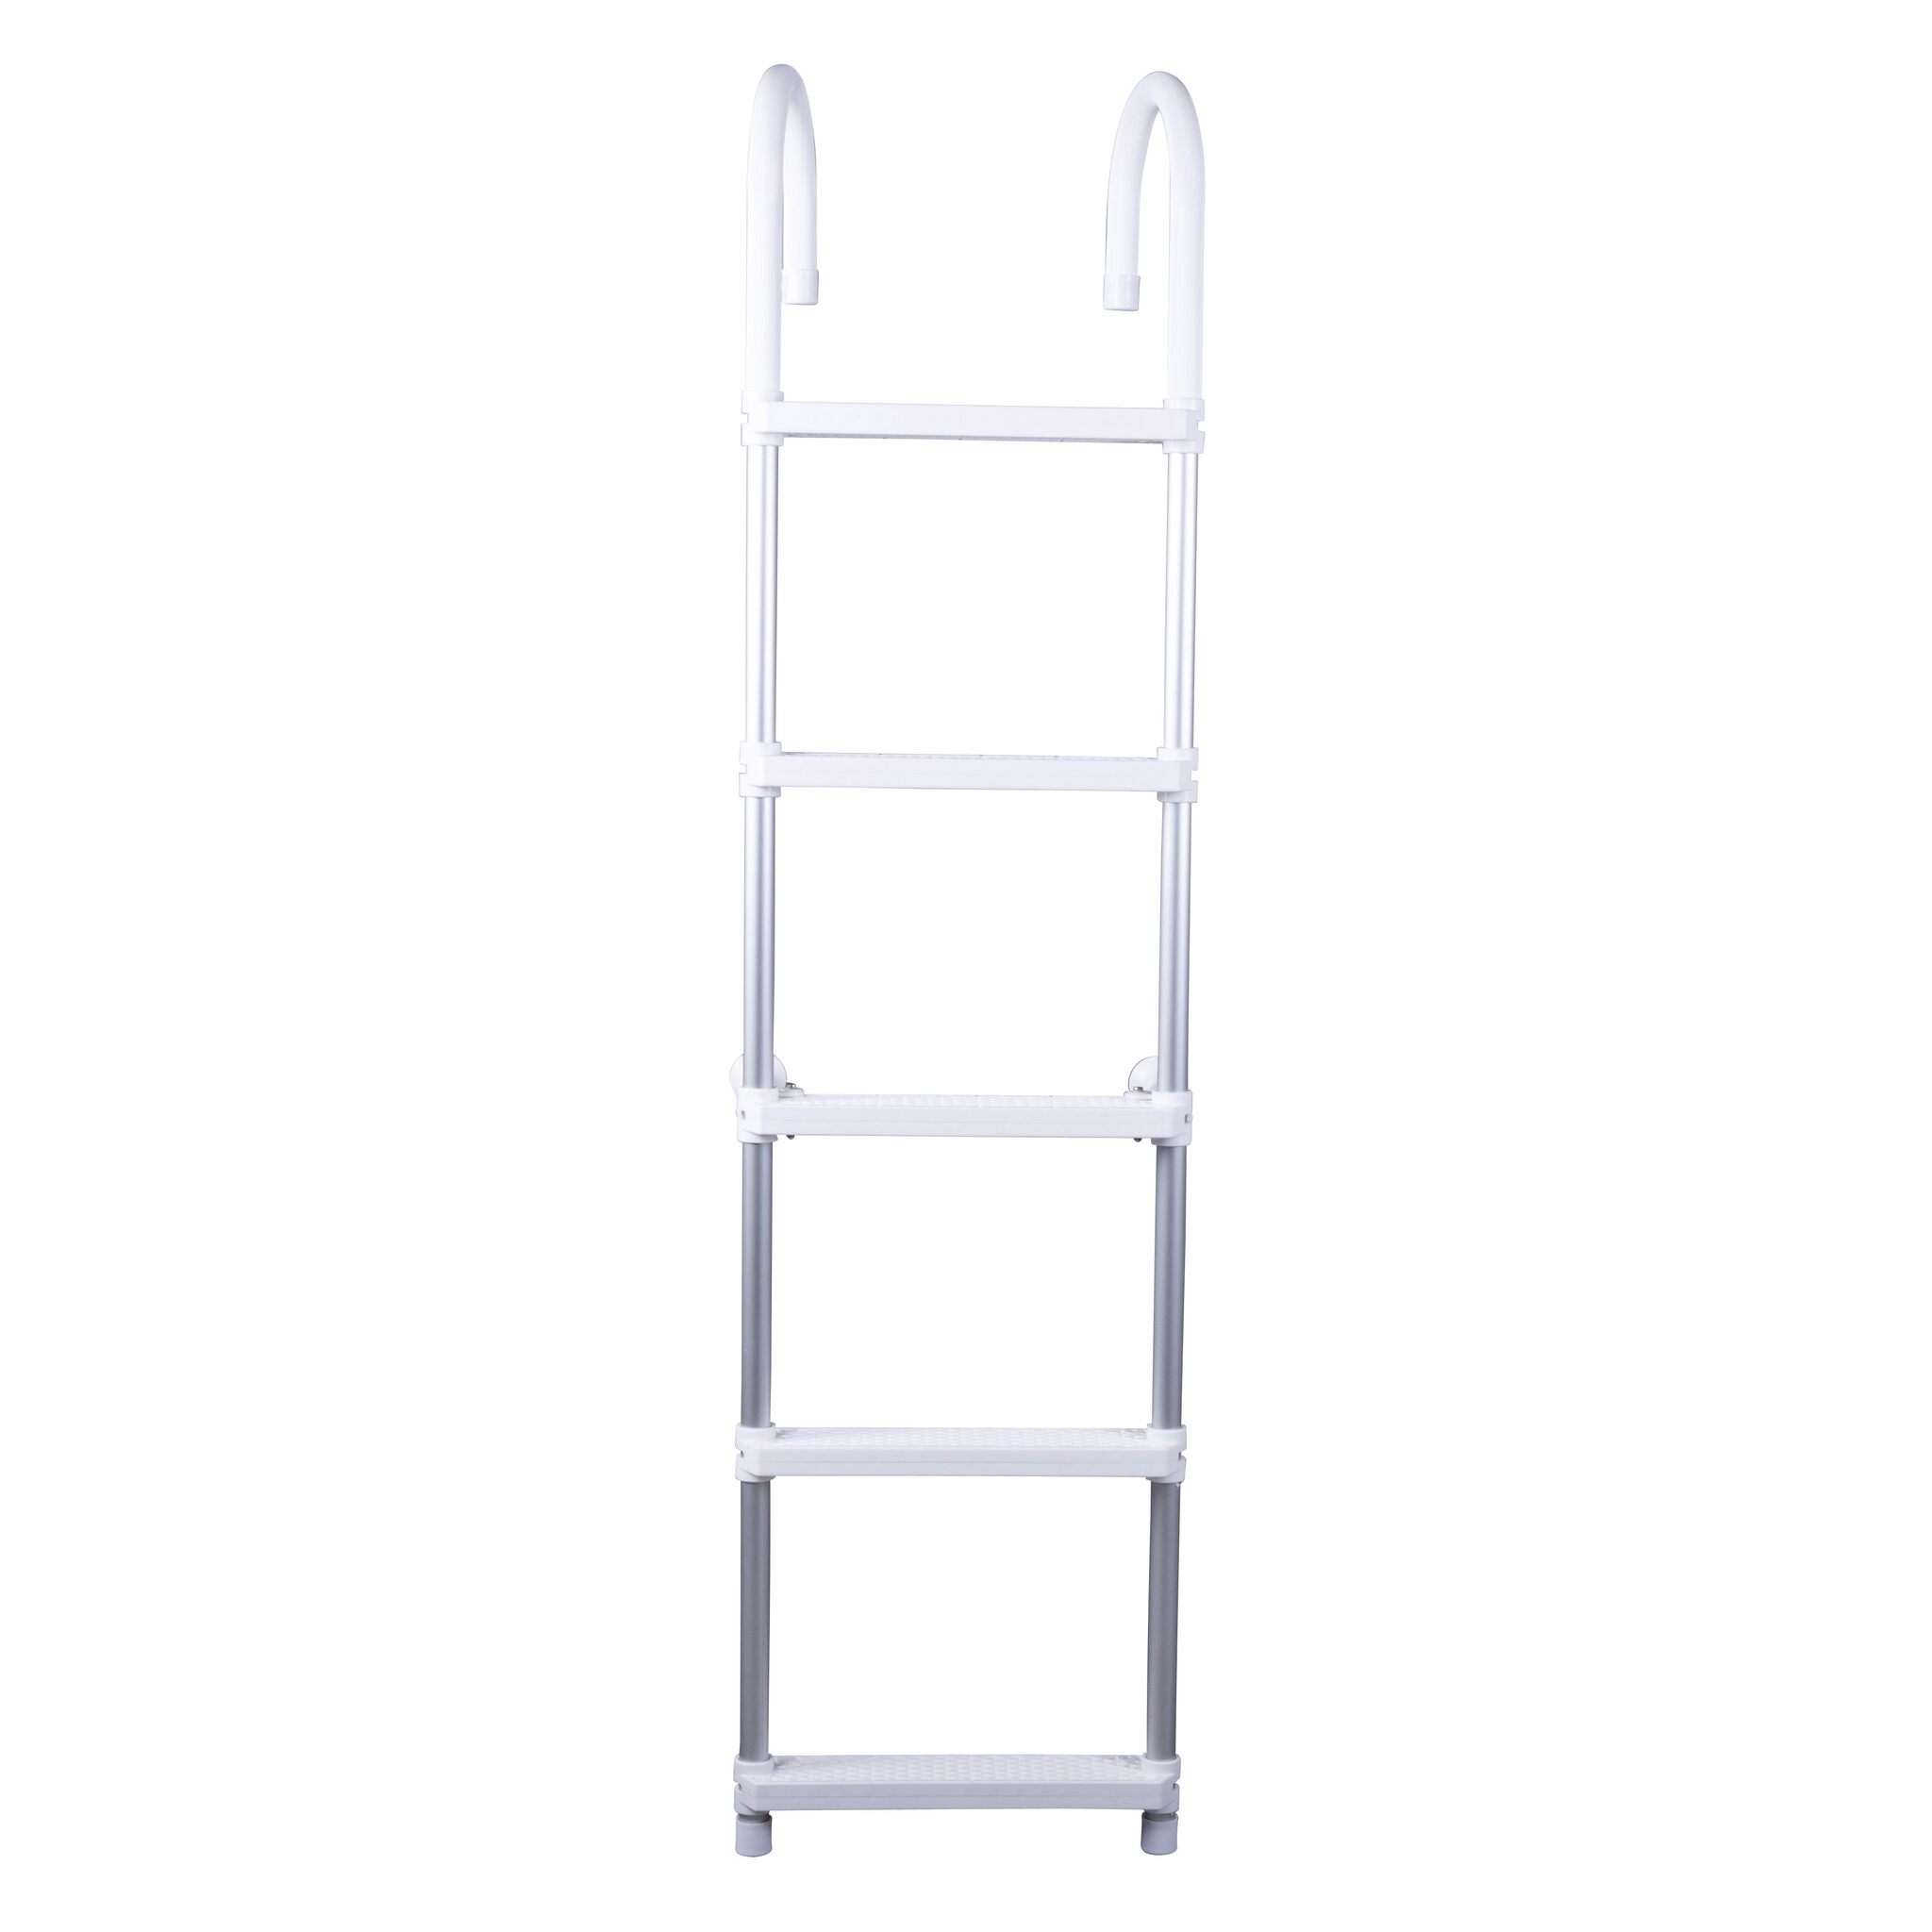 Bathing ladder to overhang, 16cm bracket width